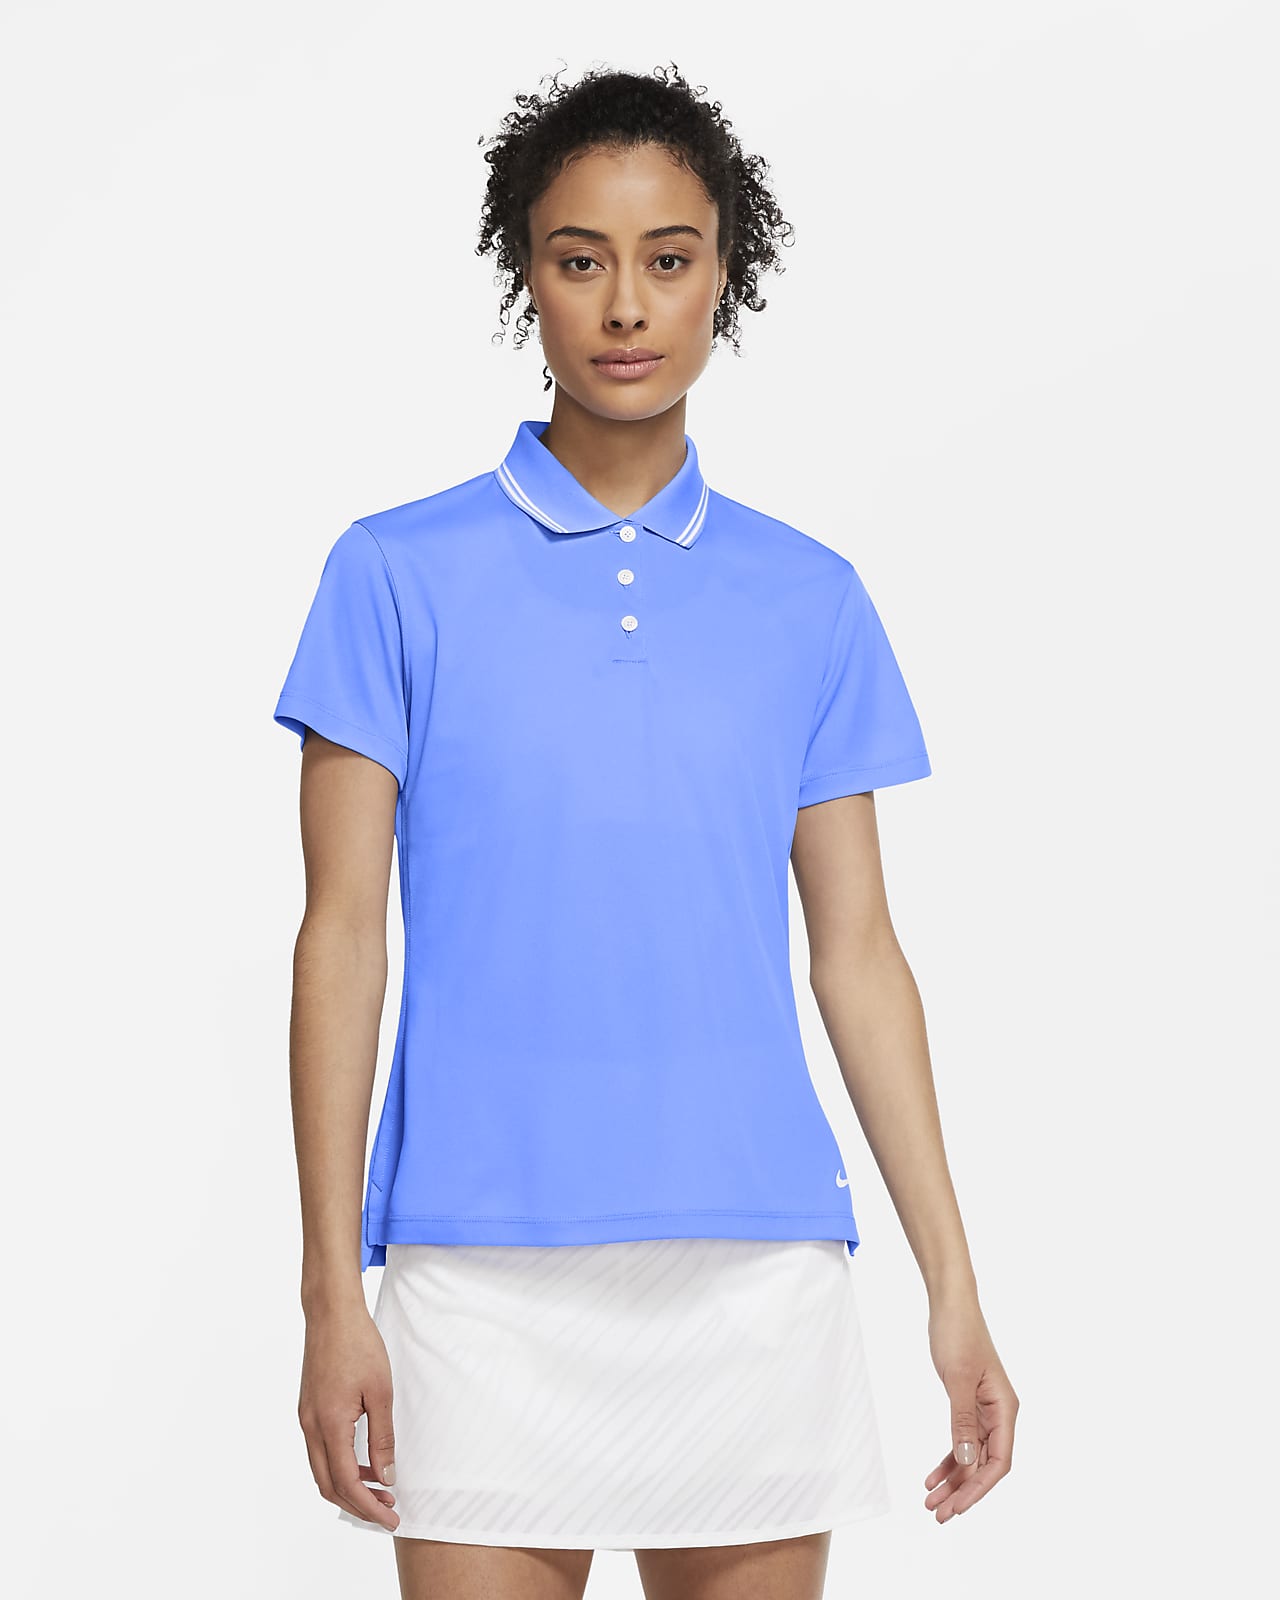 nike women's golf polo shirts